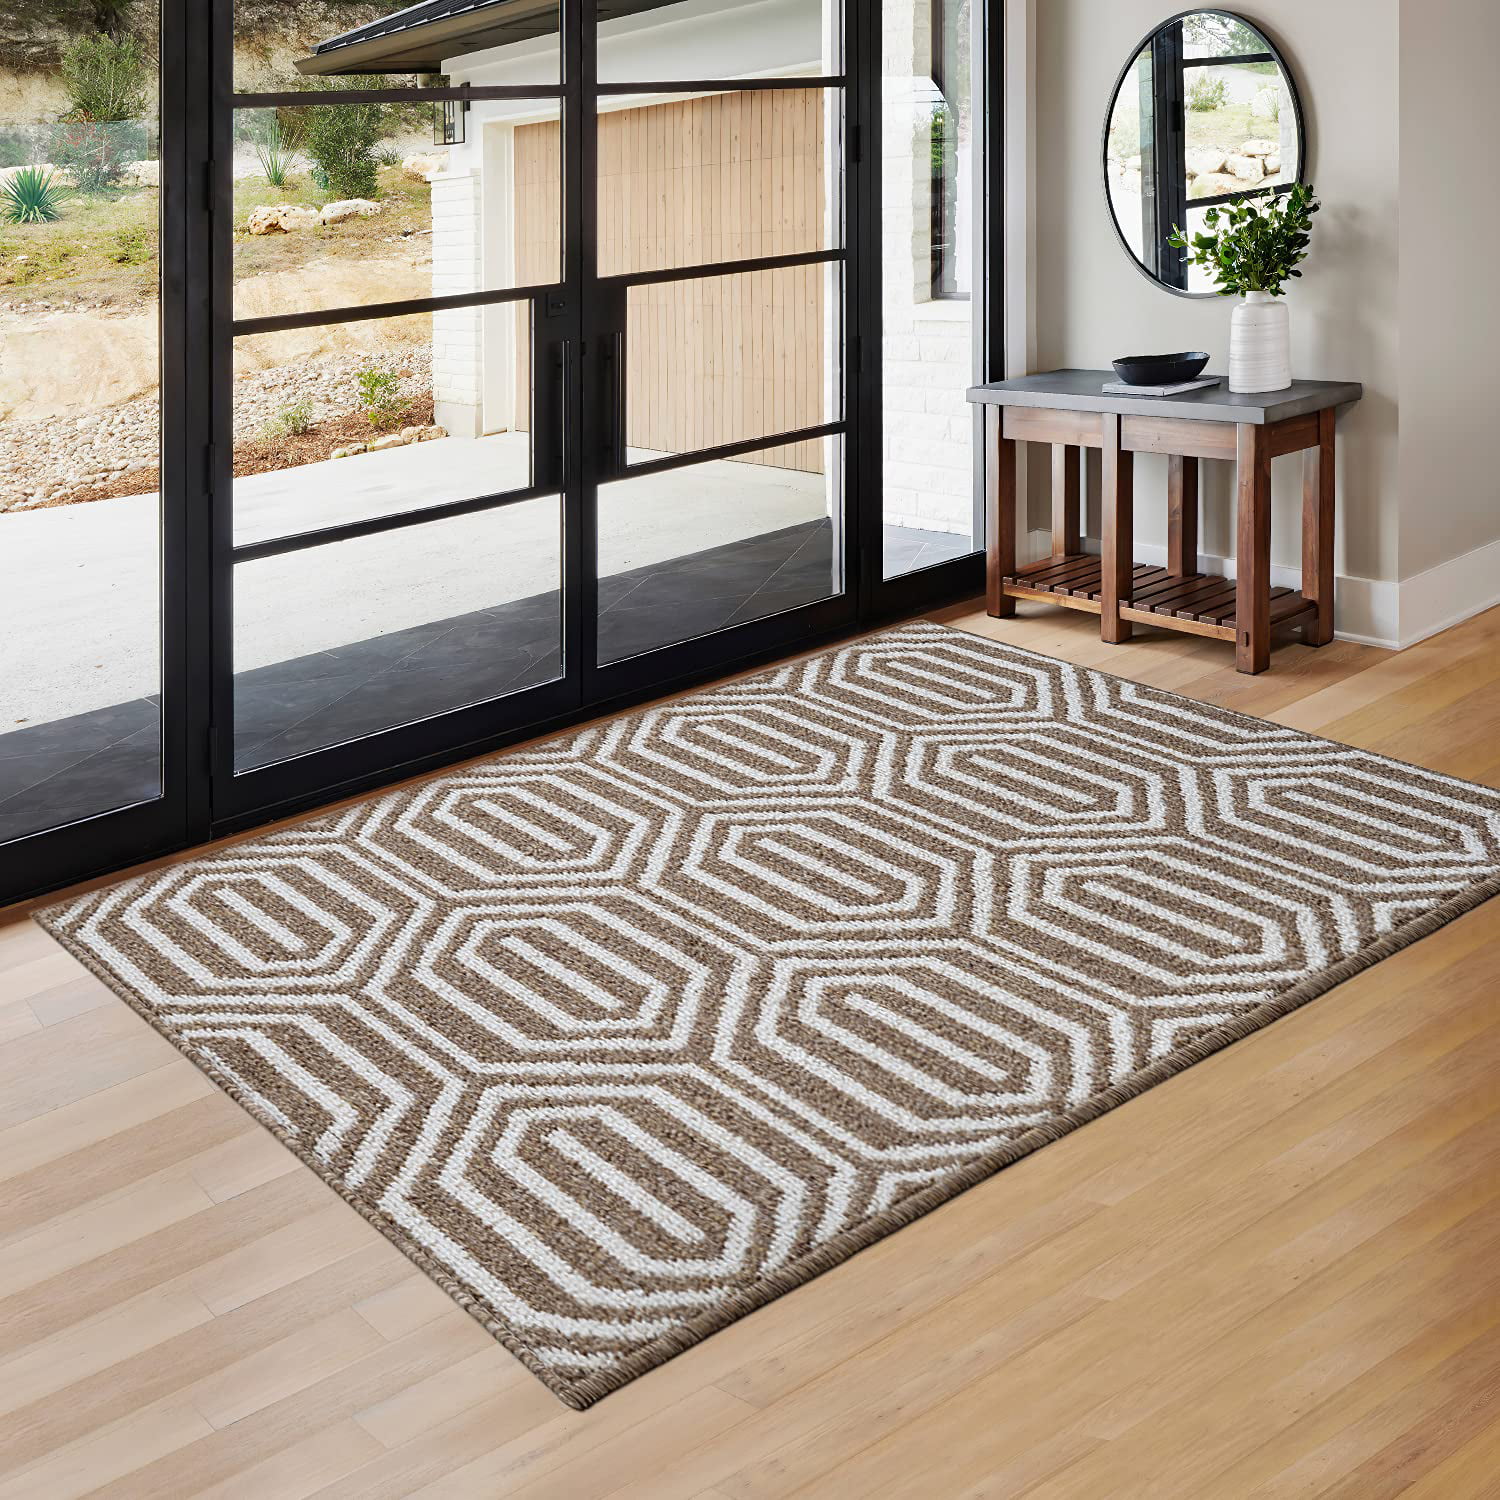 Indoor Doormat,Front Back Door Mat Rubber Backing Non Slip Door Mats  32”x48” Lar